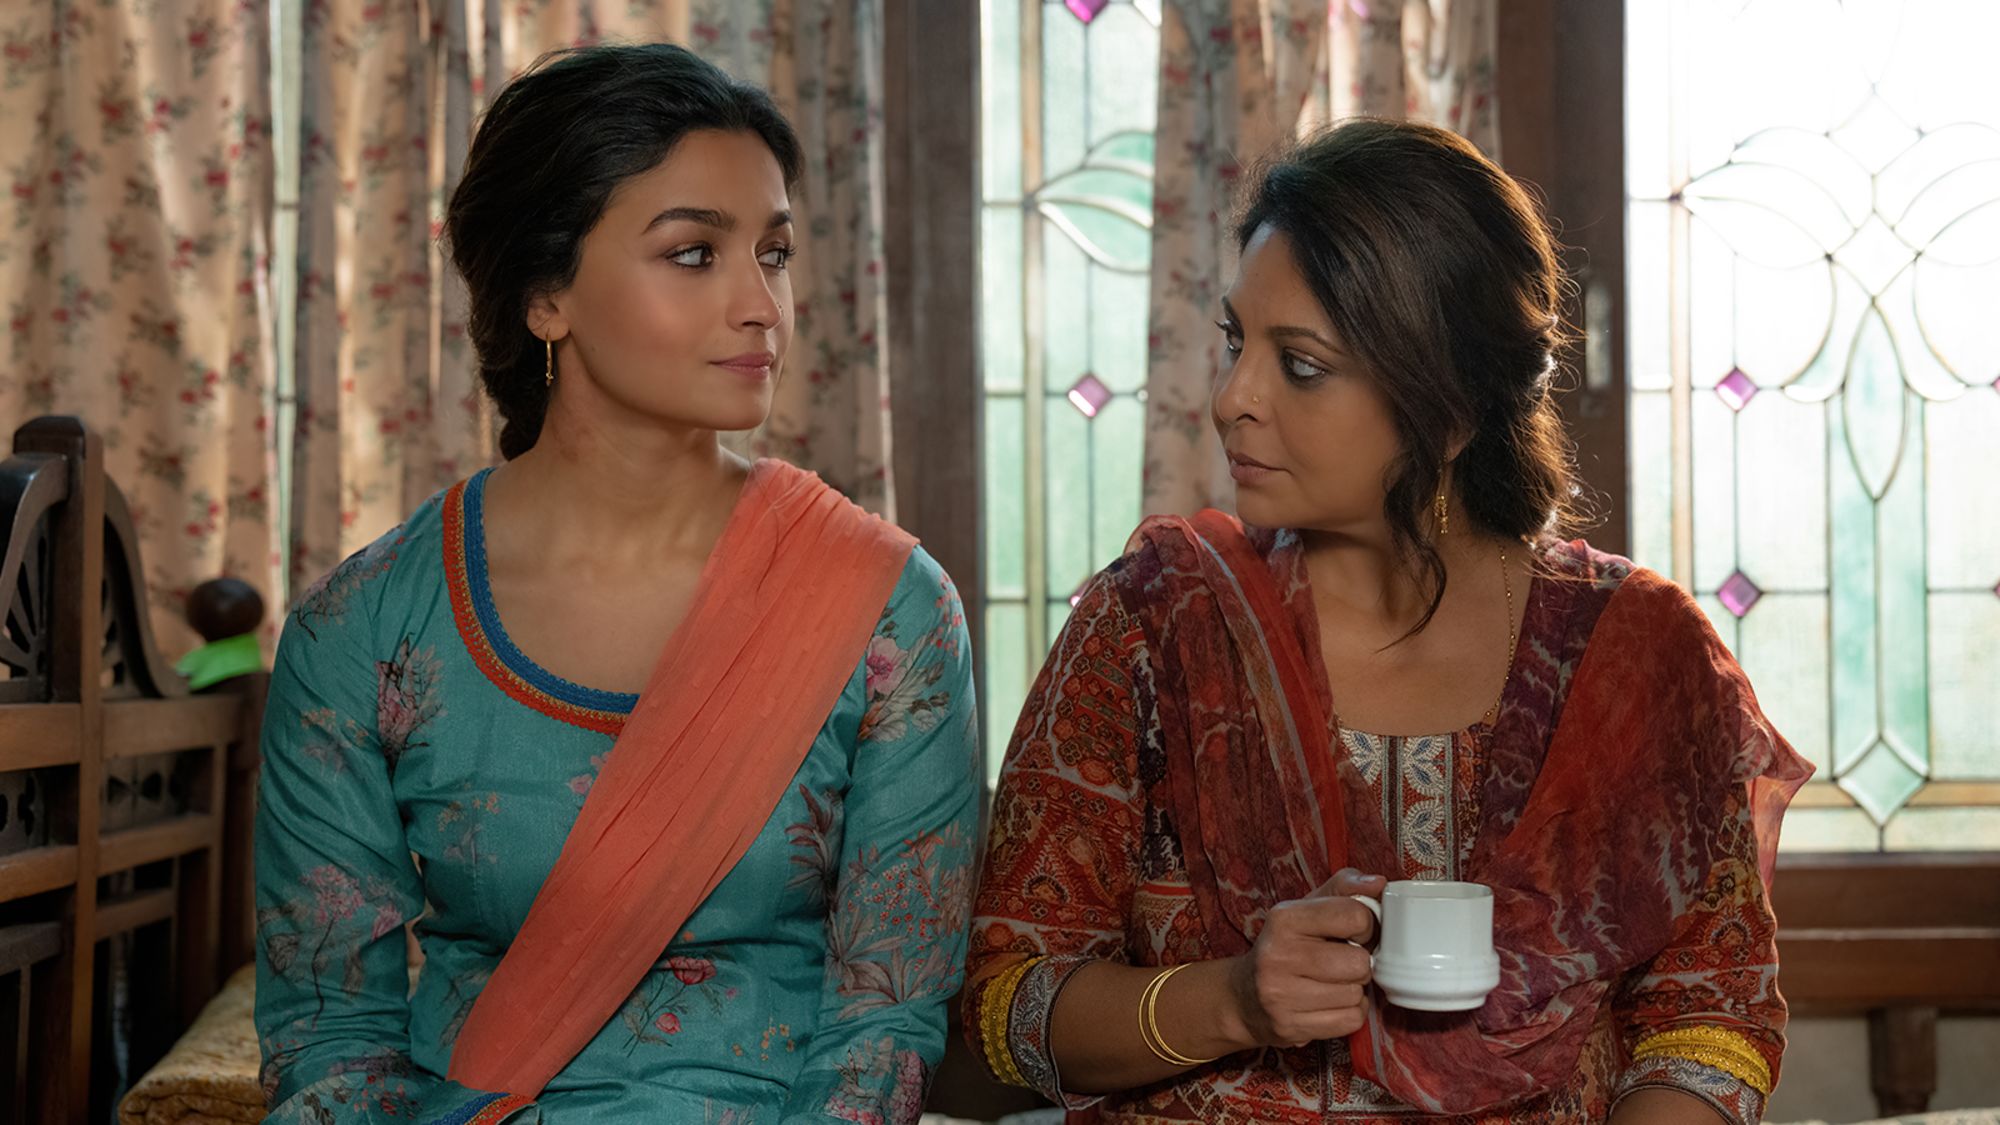 Alia Bhatt Open Sex - Indian star Alia Bhatt tackles domestic violence in Netflix movie  'Darlings' | CNN